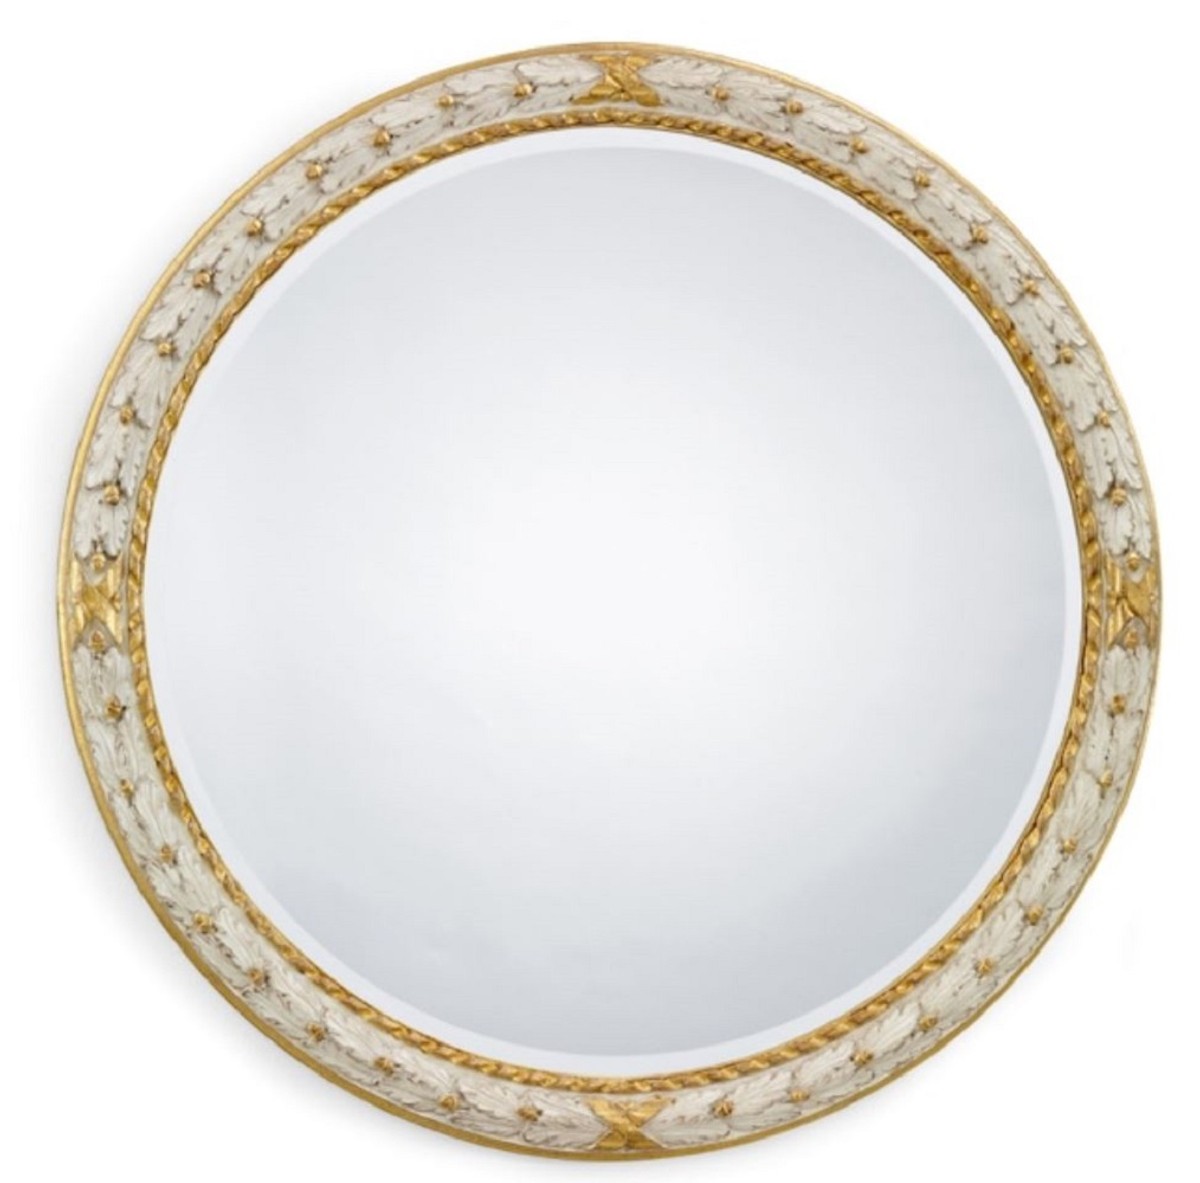 Espejo ovalado barroco en color dorado - Muebles de estilo barroco